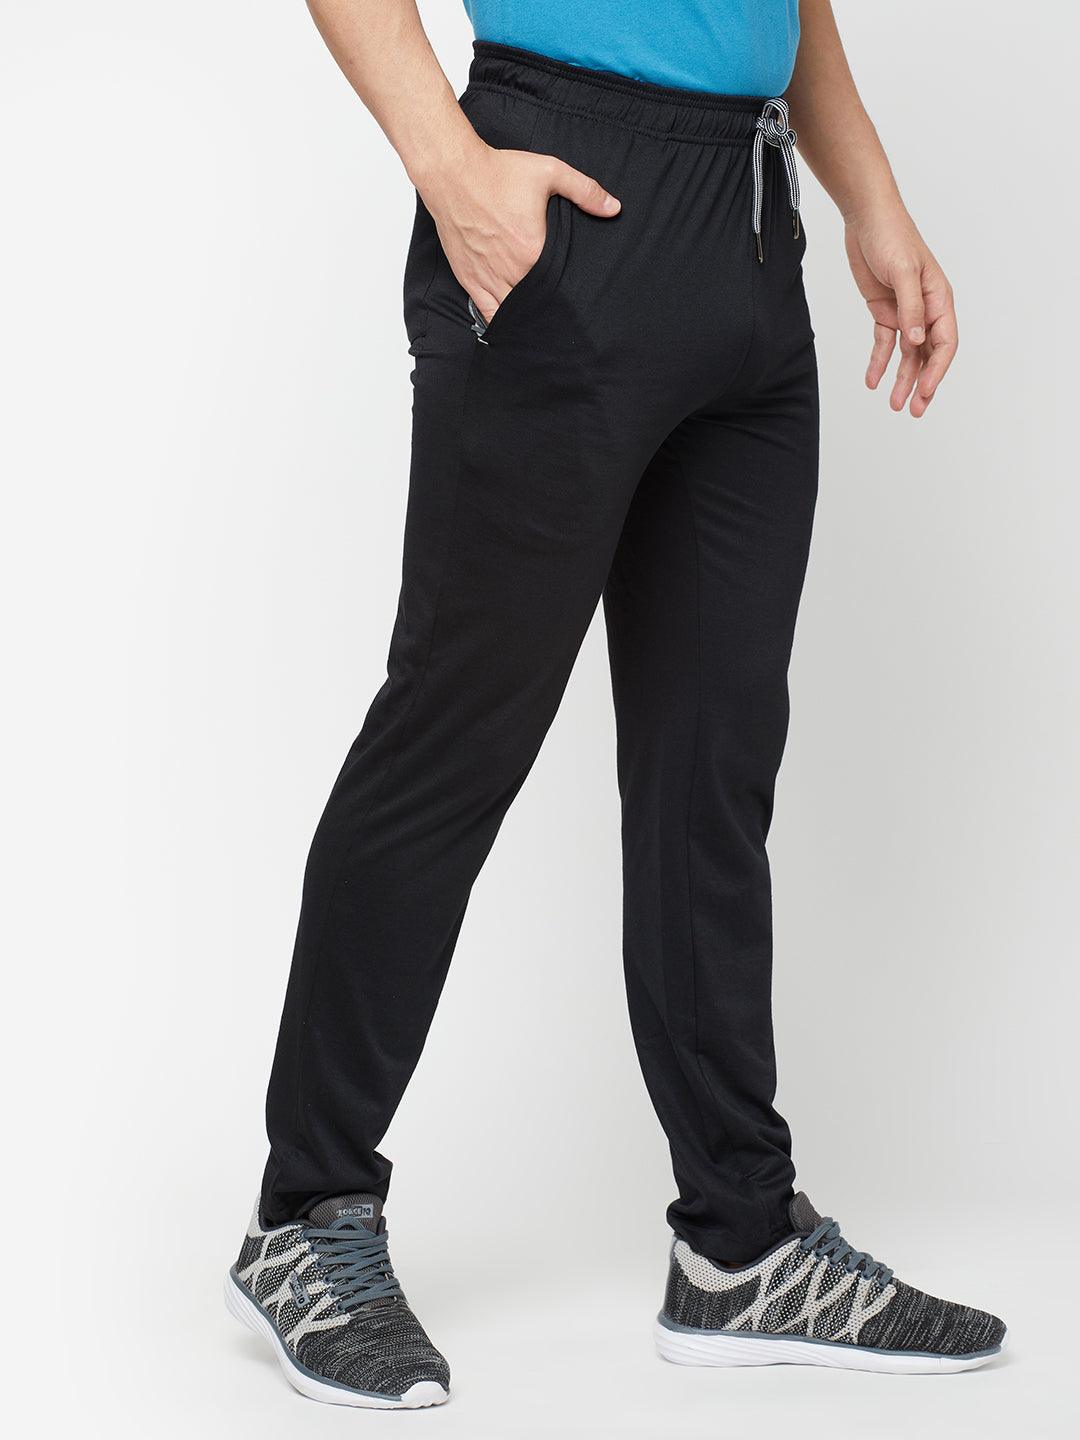 Buy Black Track Pants for Men by Sporto Online  Ajiocom